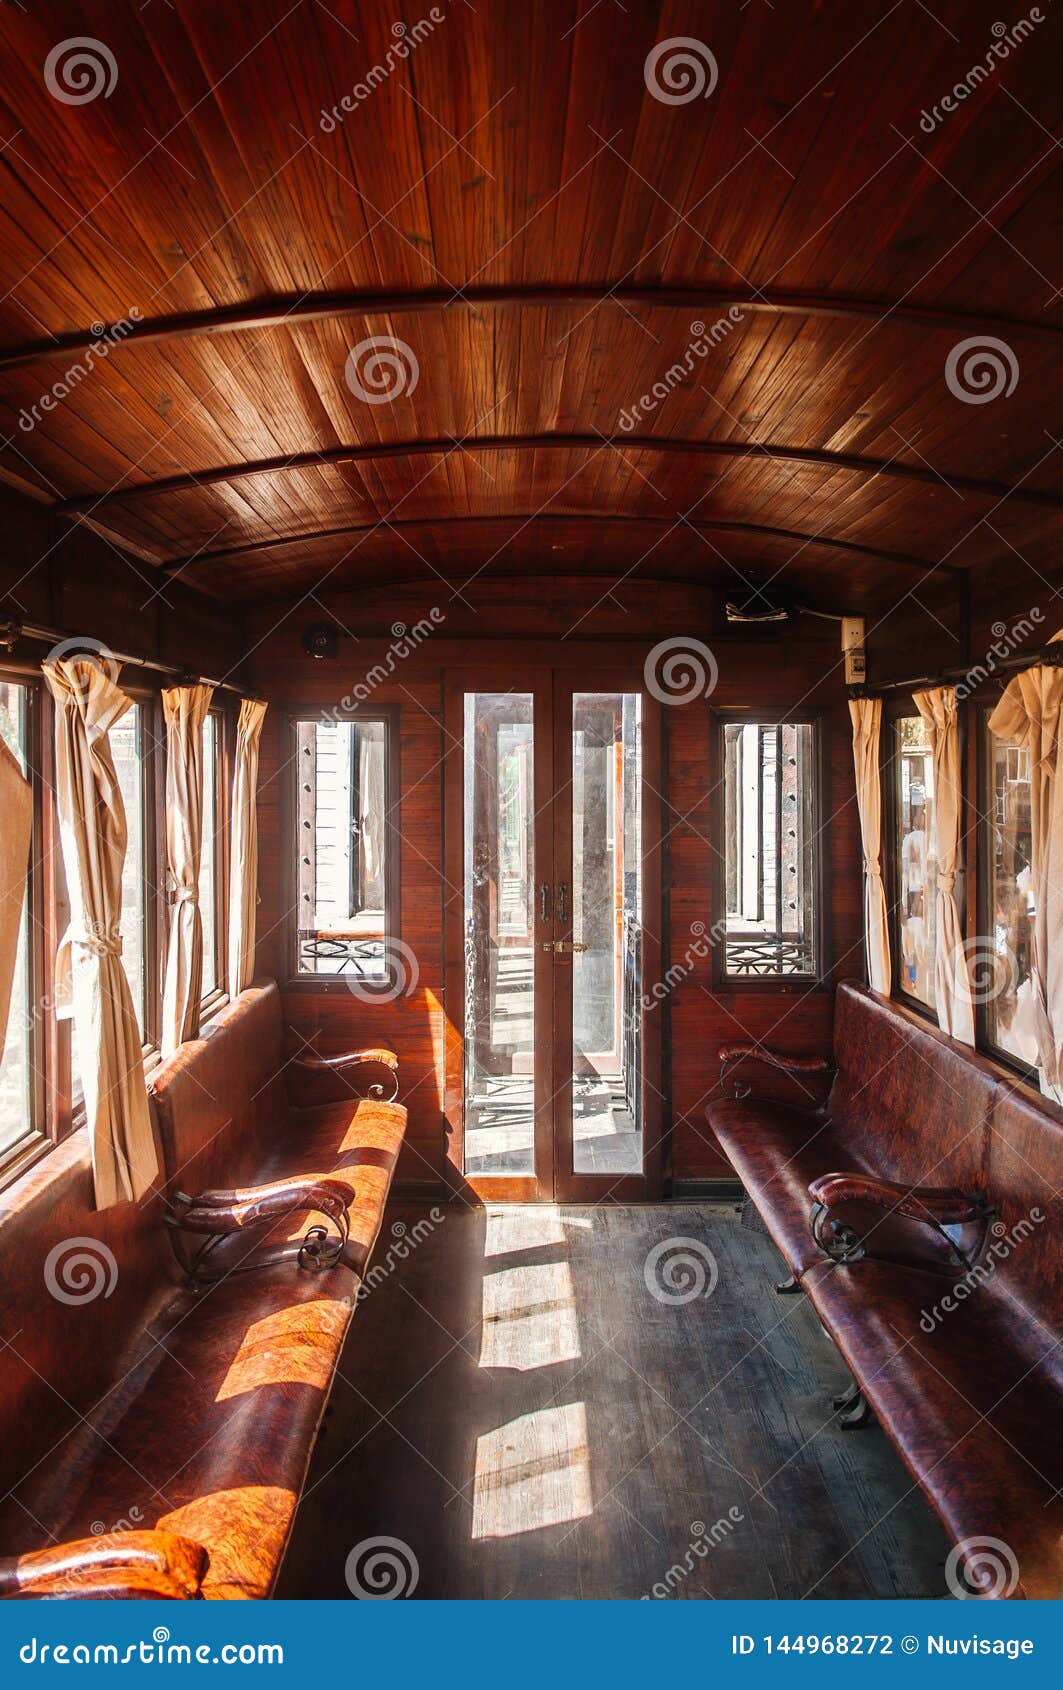 Ancien train en bois, Collection